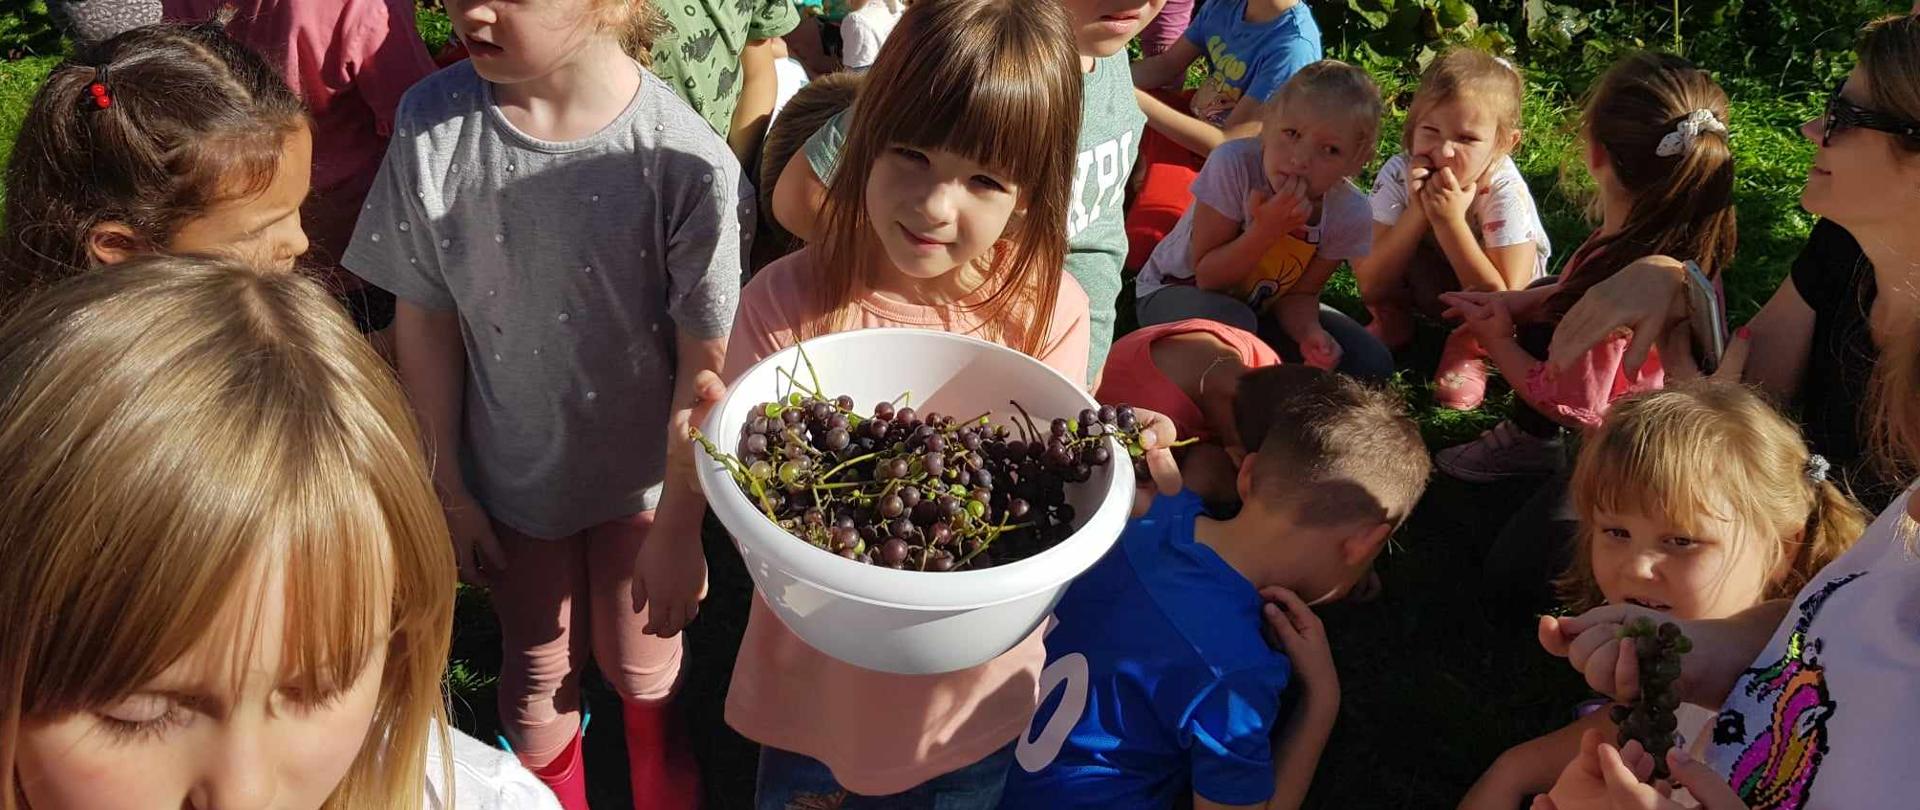 W centrum grupy dzieci stoi dziewczynka trzymająca miskę wypełnioną winogronami.